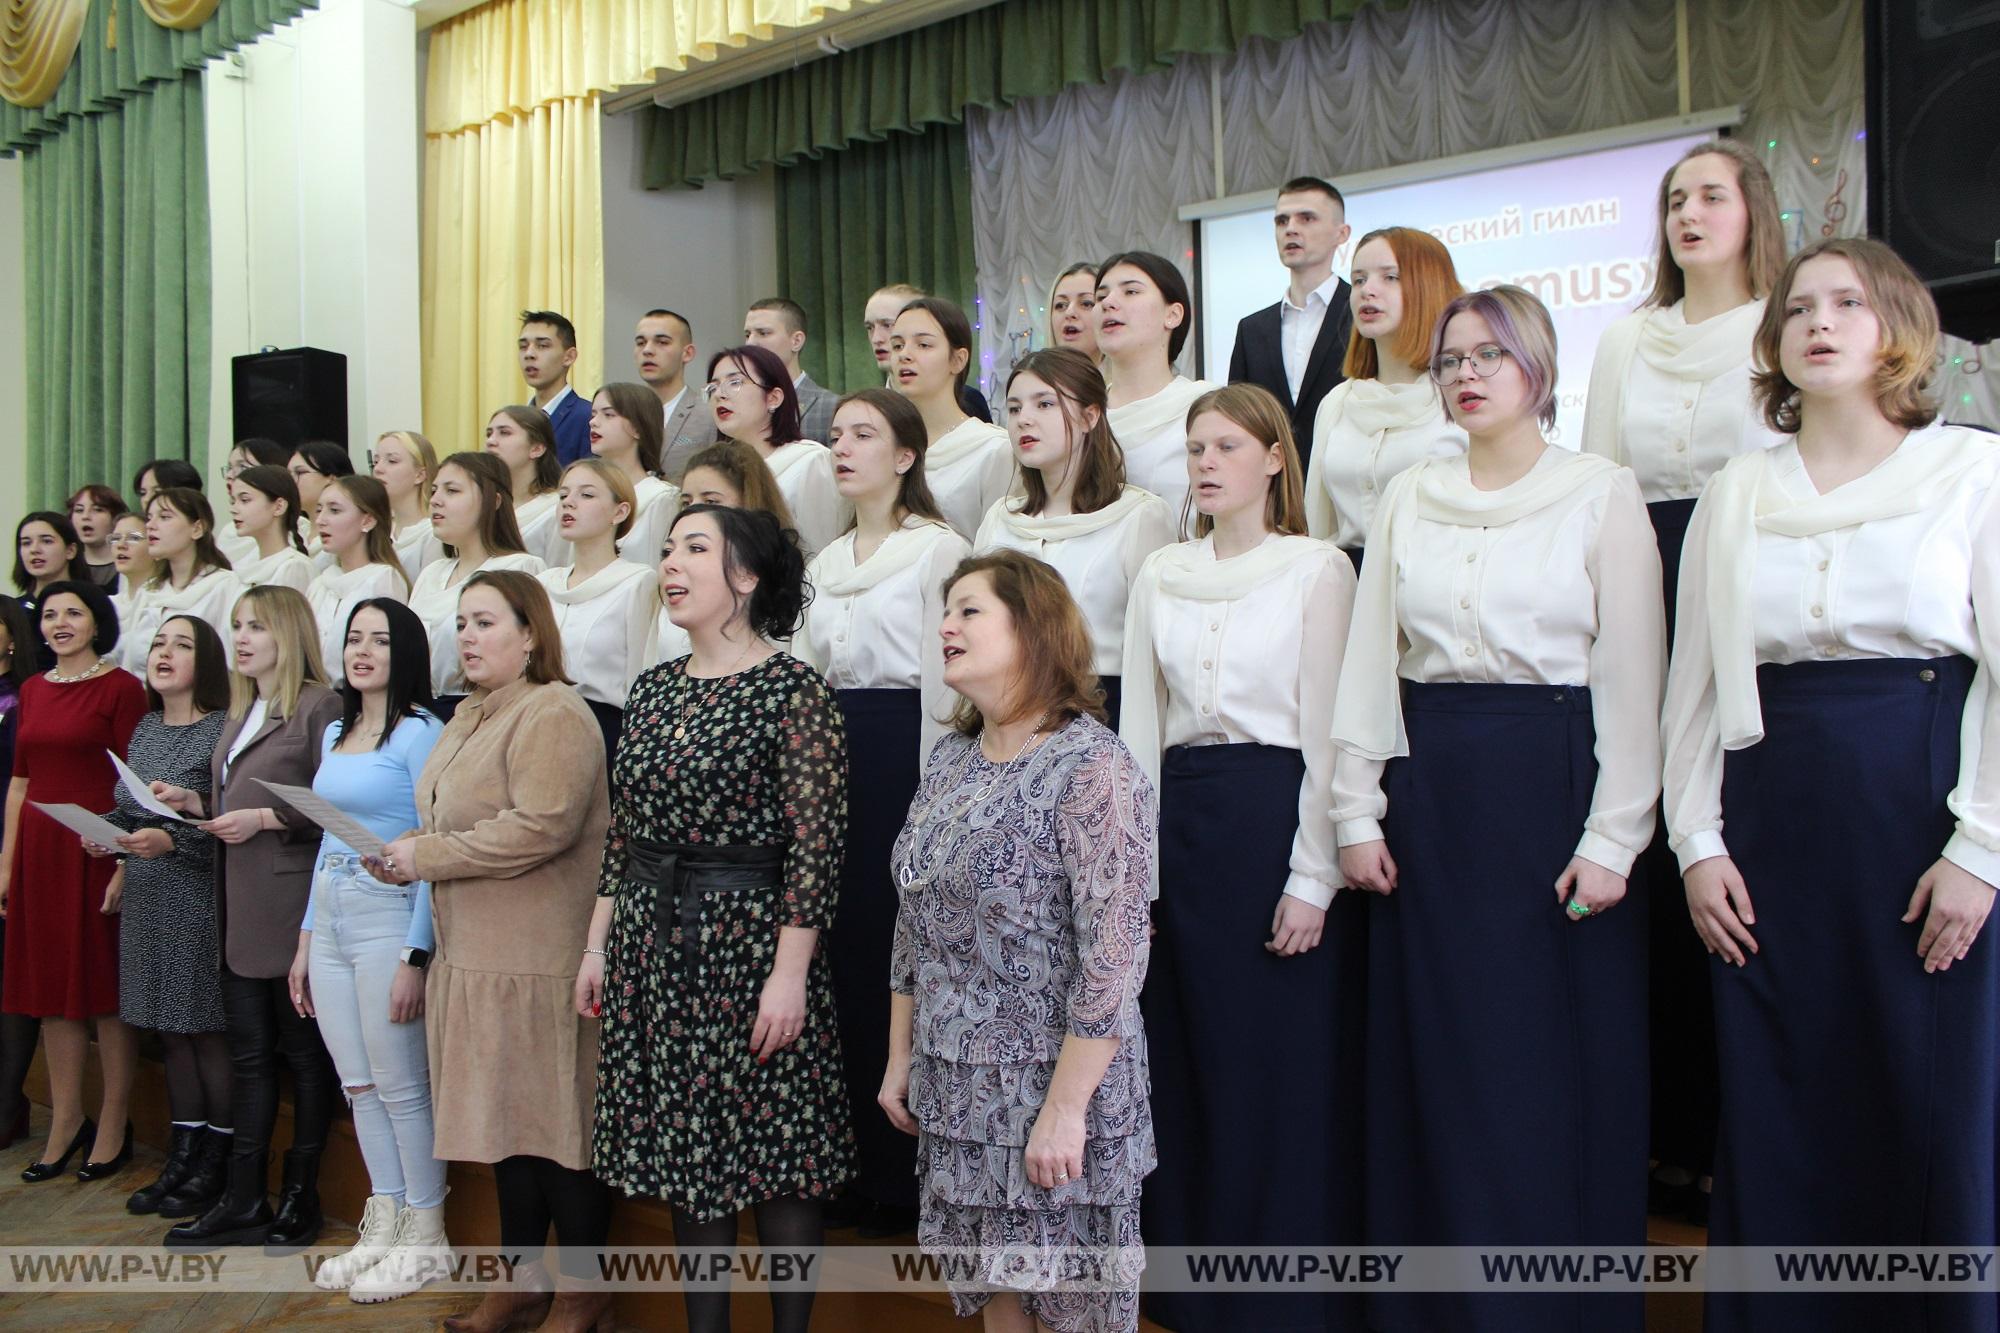 Пинский педагогический колледж отметил 30-летие специальности «Музыкальное образование»